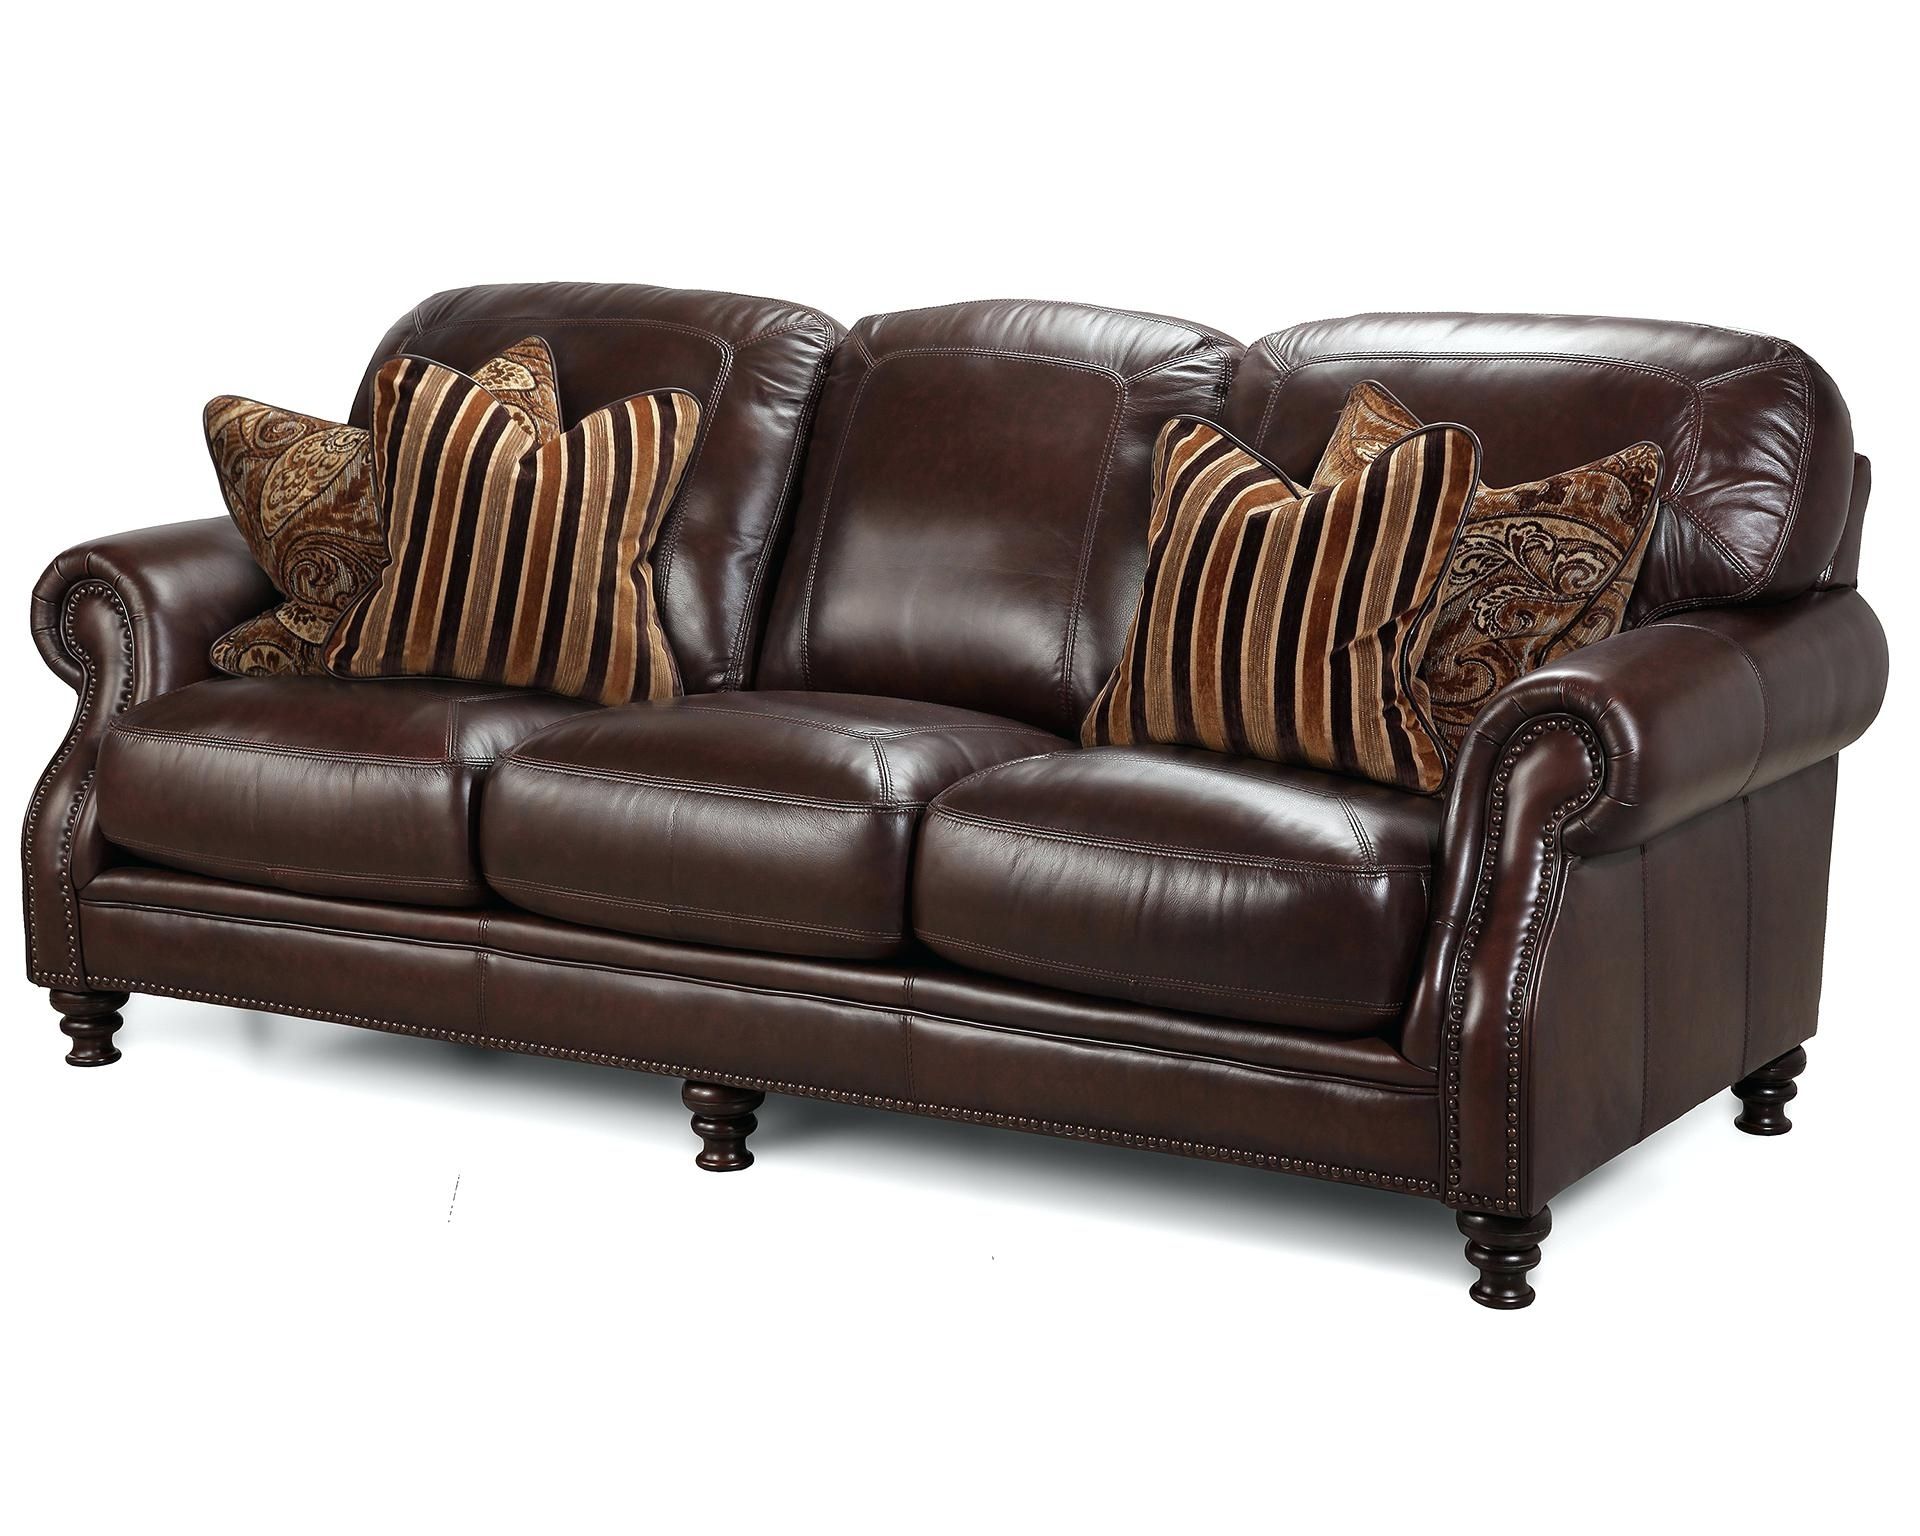 Berkline Home Theater Seating Costco Sofas Sofas Marvelous Leather Within Famous Berkline Sofas (View 13 of 15)